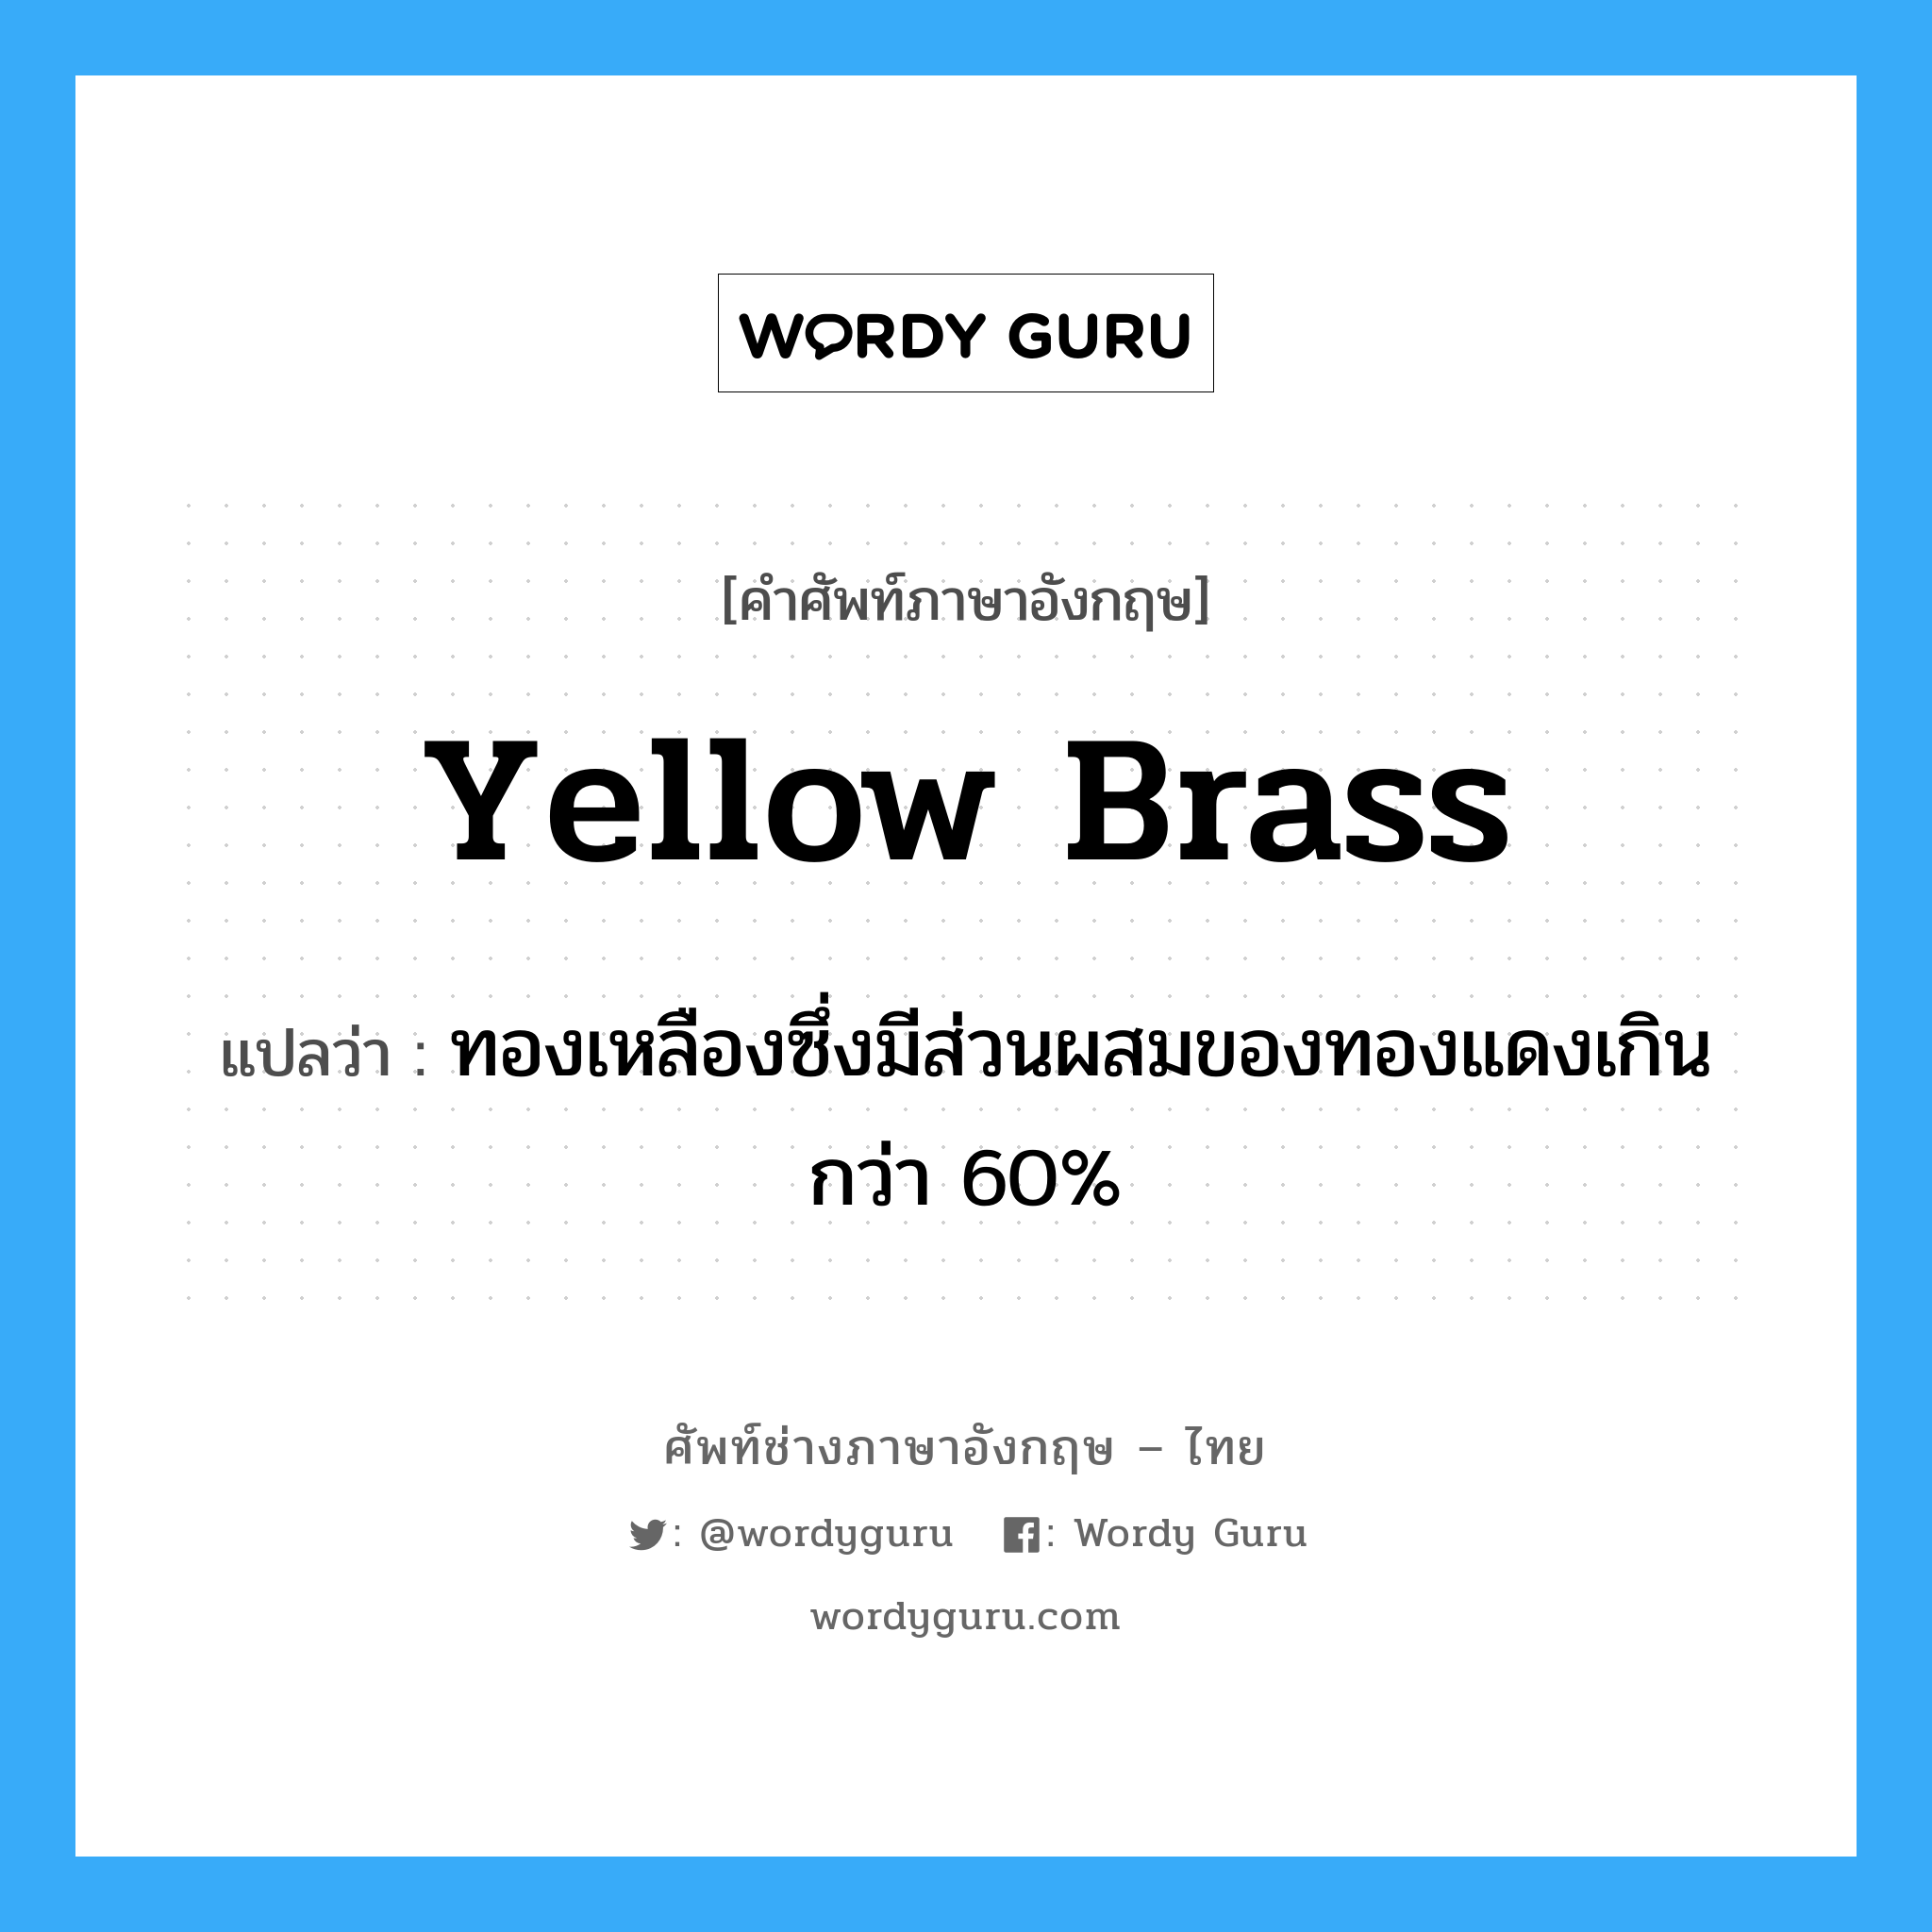 yellow brass แปลว่า?, คำศัพท์ช่างภาษาอังกฤษ - ไทย yellow brass คำศัพท์ภาษาอังกฤษ yellow brass แปลว่า ทองเหลืองซึ่งมีส่วนผสมของทองแดงเกินกว่า 60%